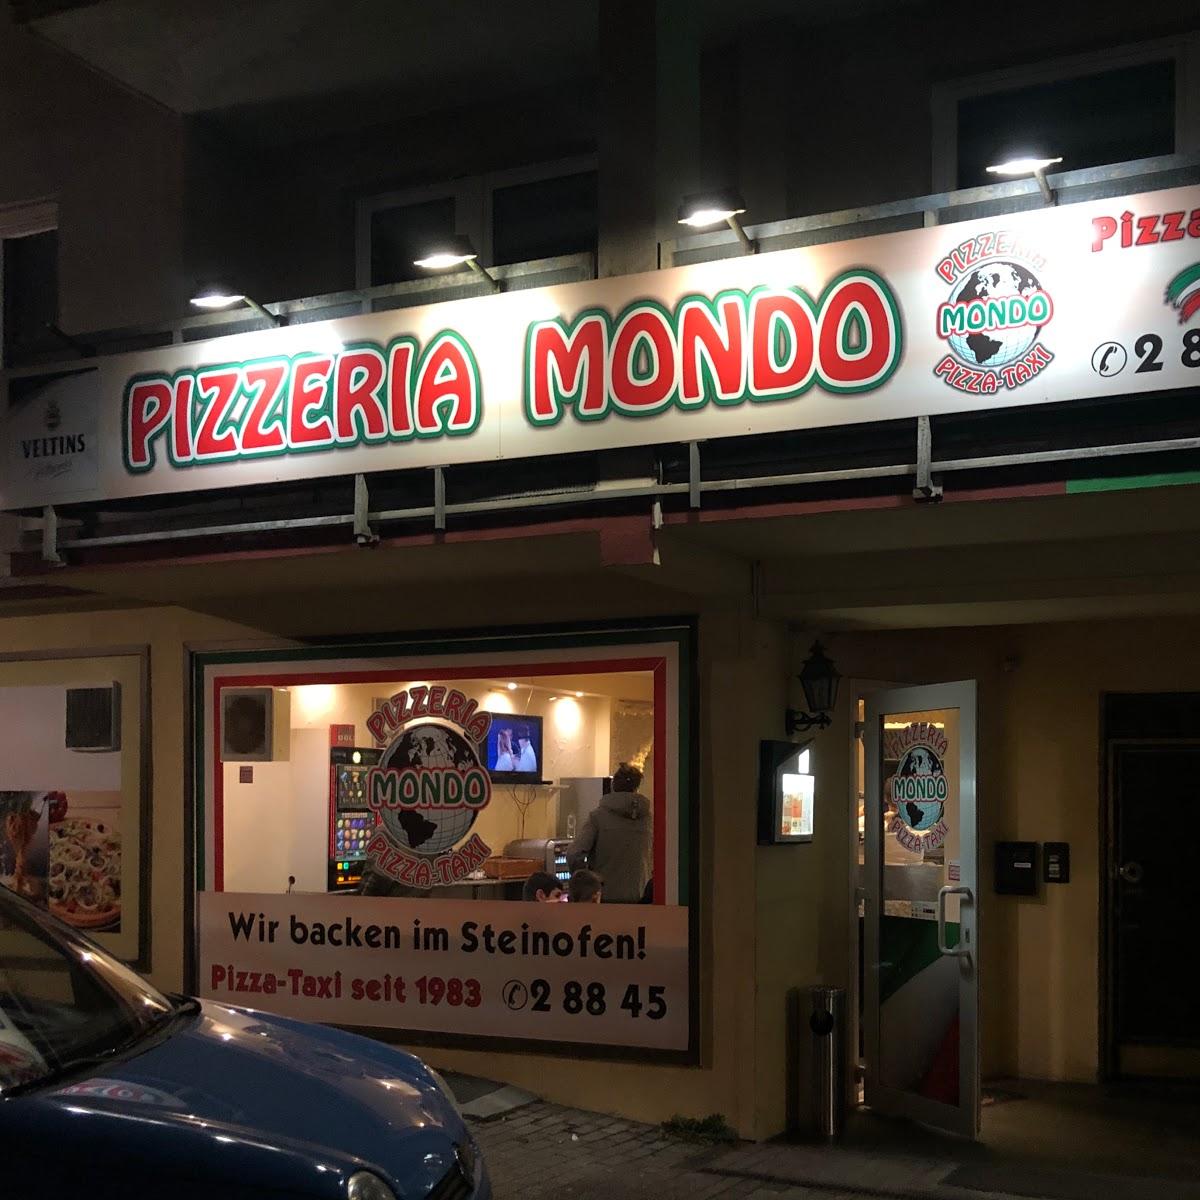 Restaurant "Pizzeria Mondo" in Remscheid